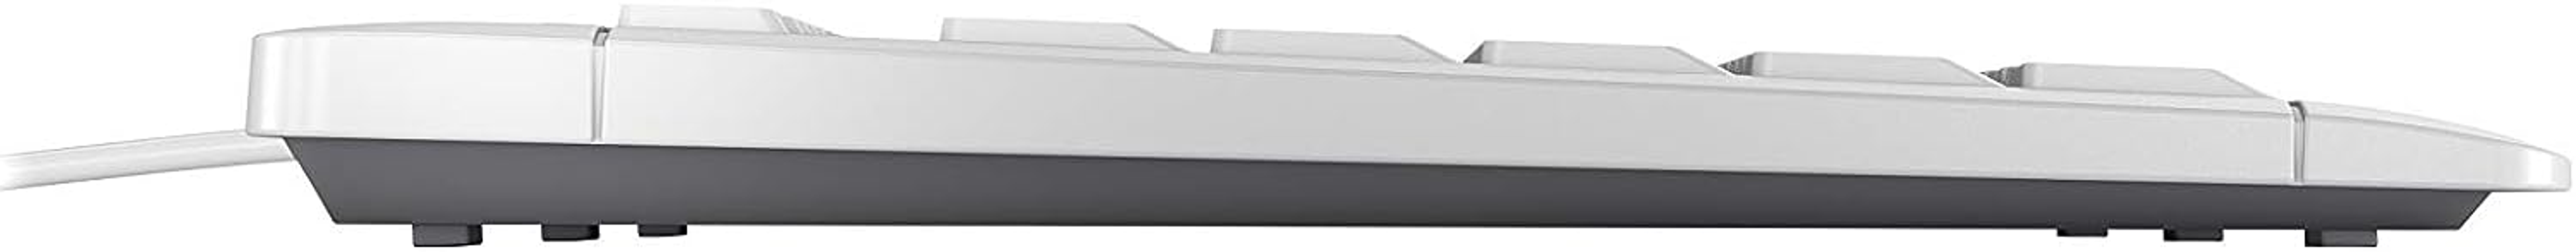 CHERRY JK-8500DE-0, Tastatur